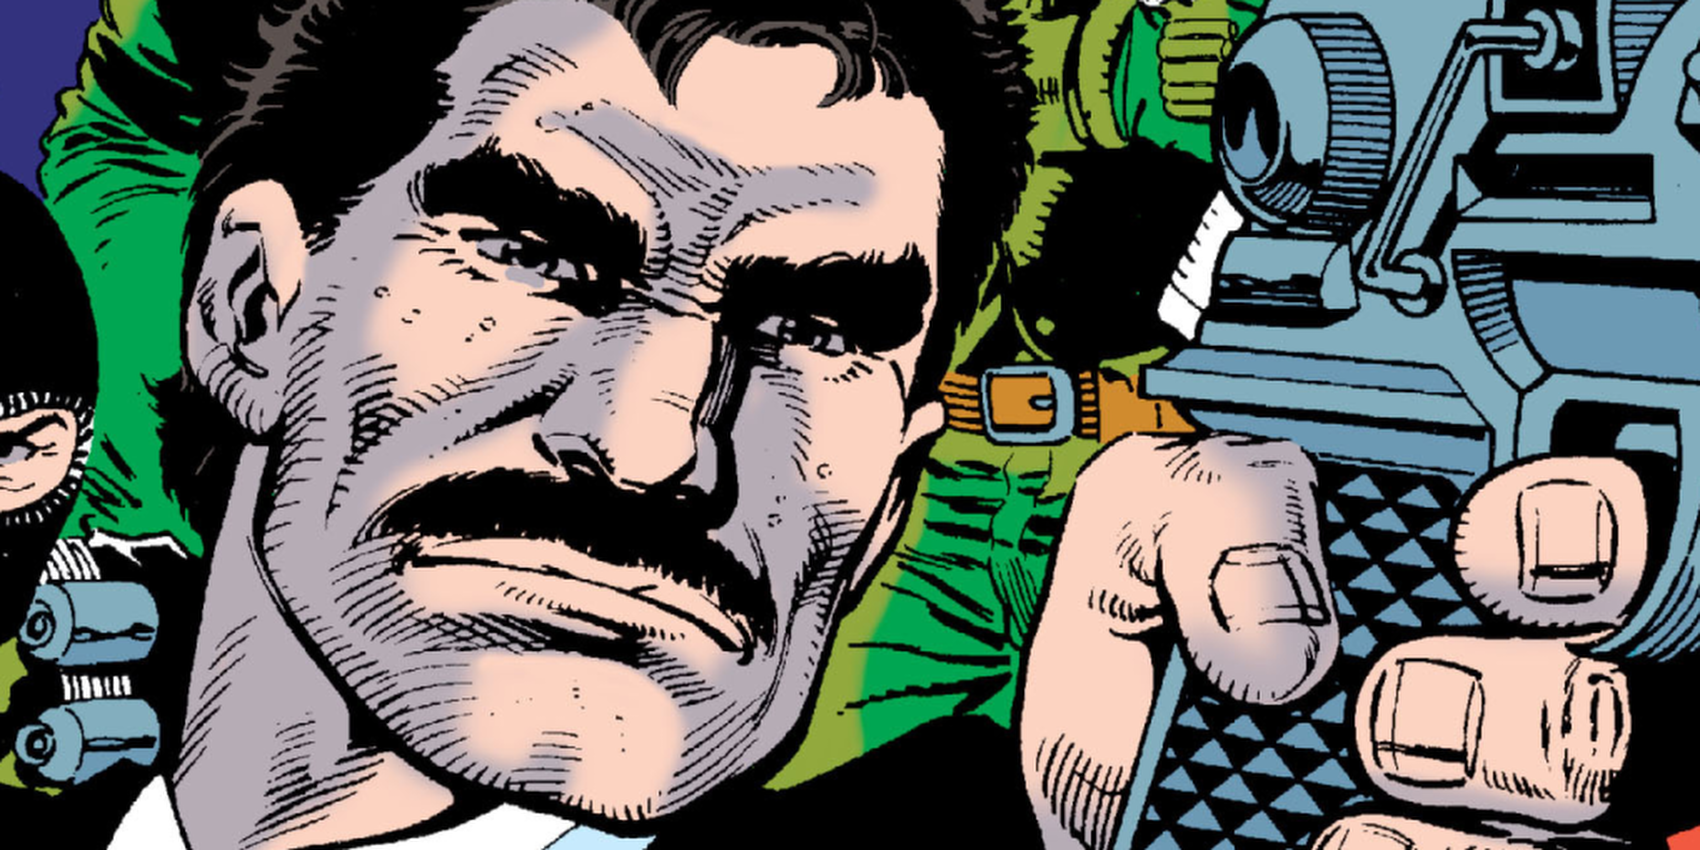 DC Comics' Bruno Mannheim holds a pistol